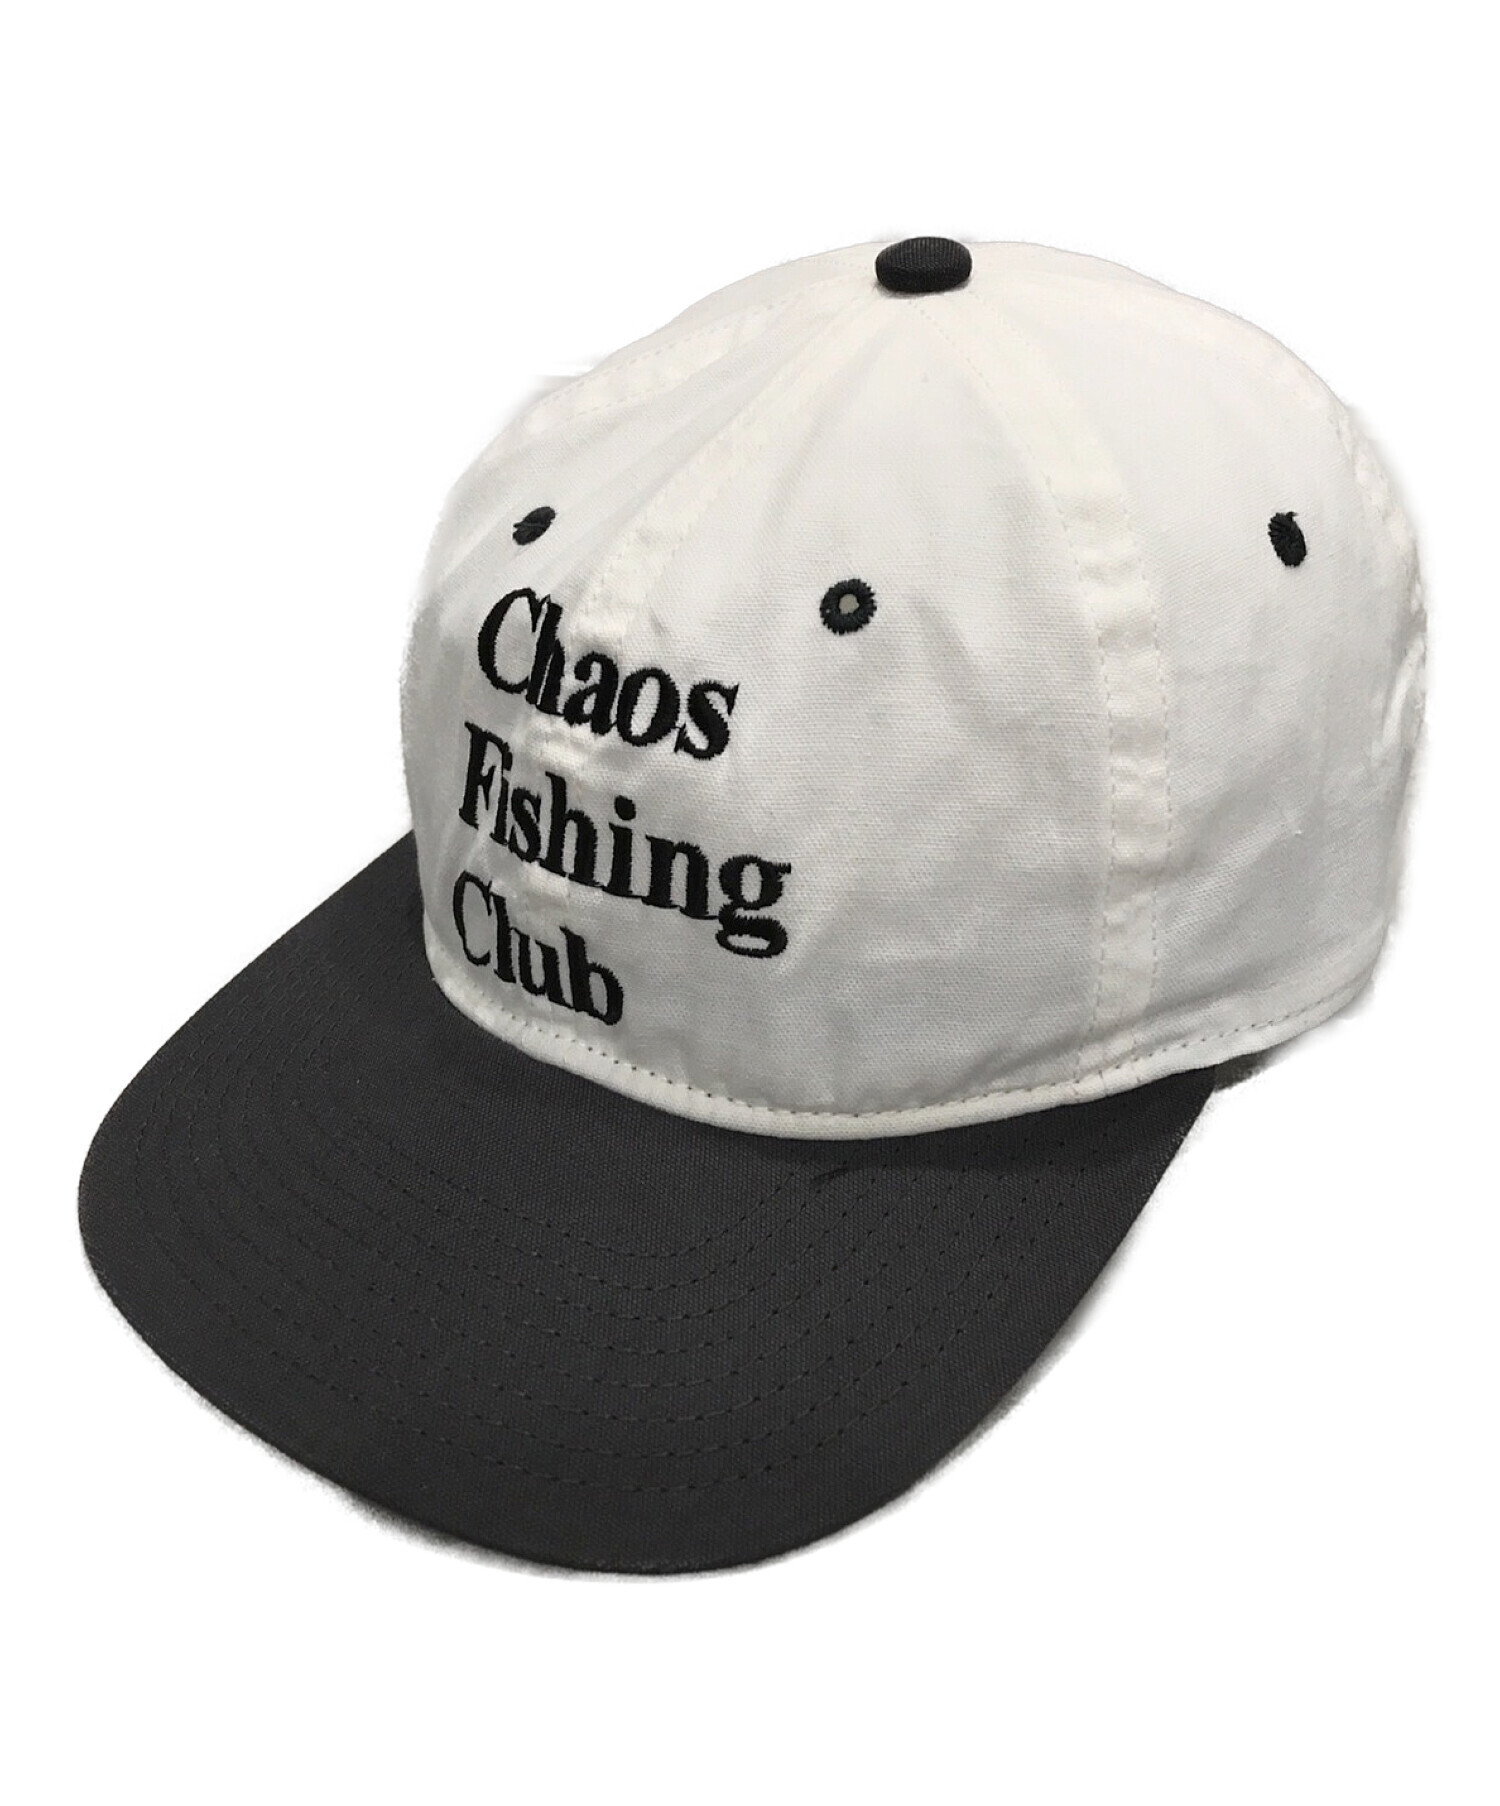 中古・古着通販】CHAOS FISHING CLUB (カオスフィッシングクラブ) ロゴ